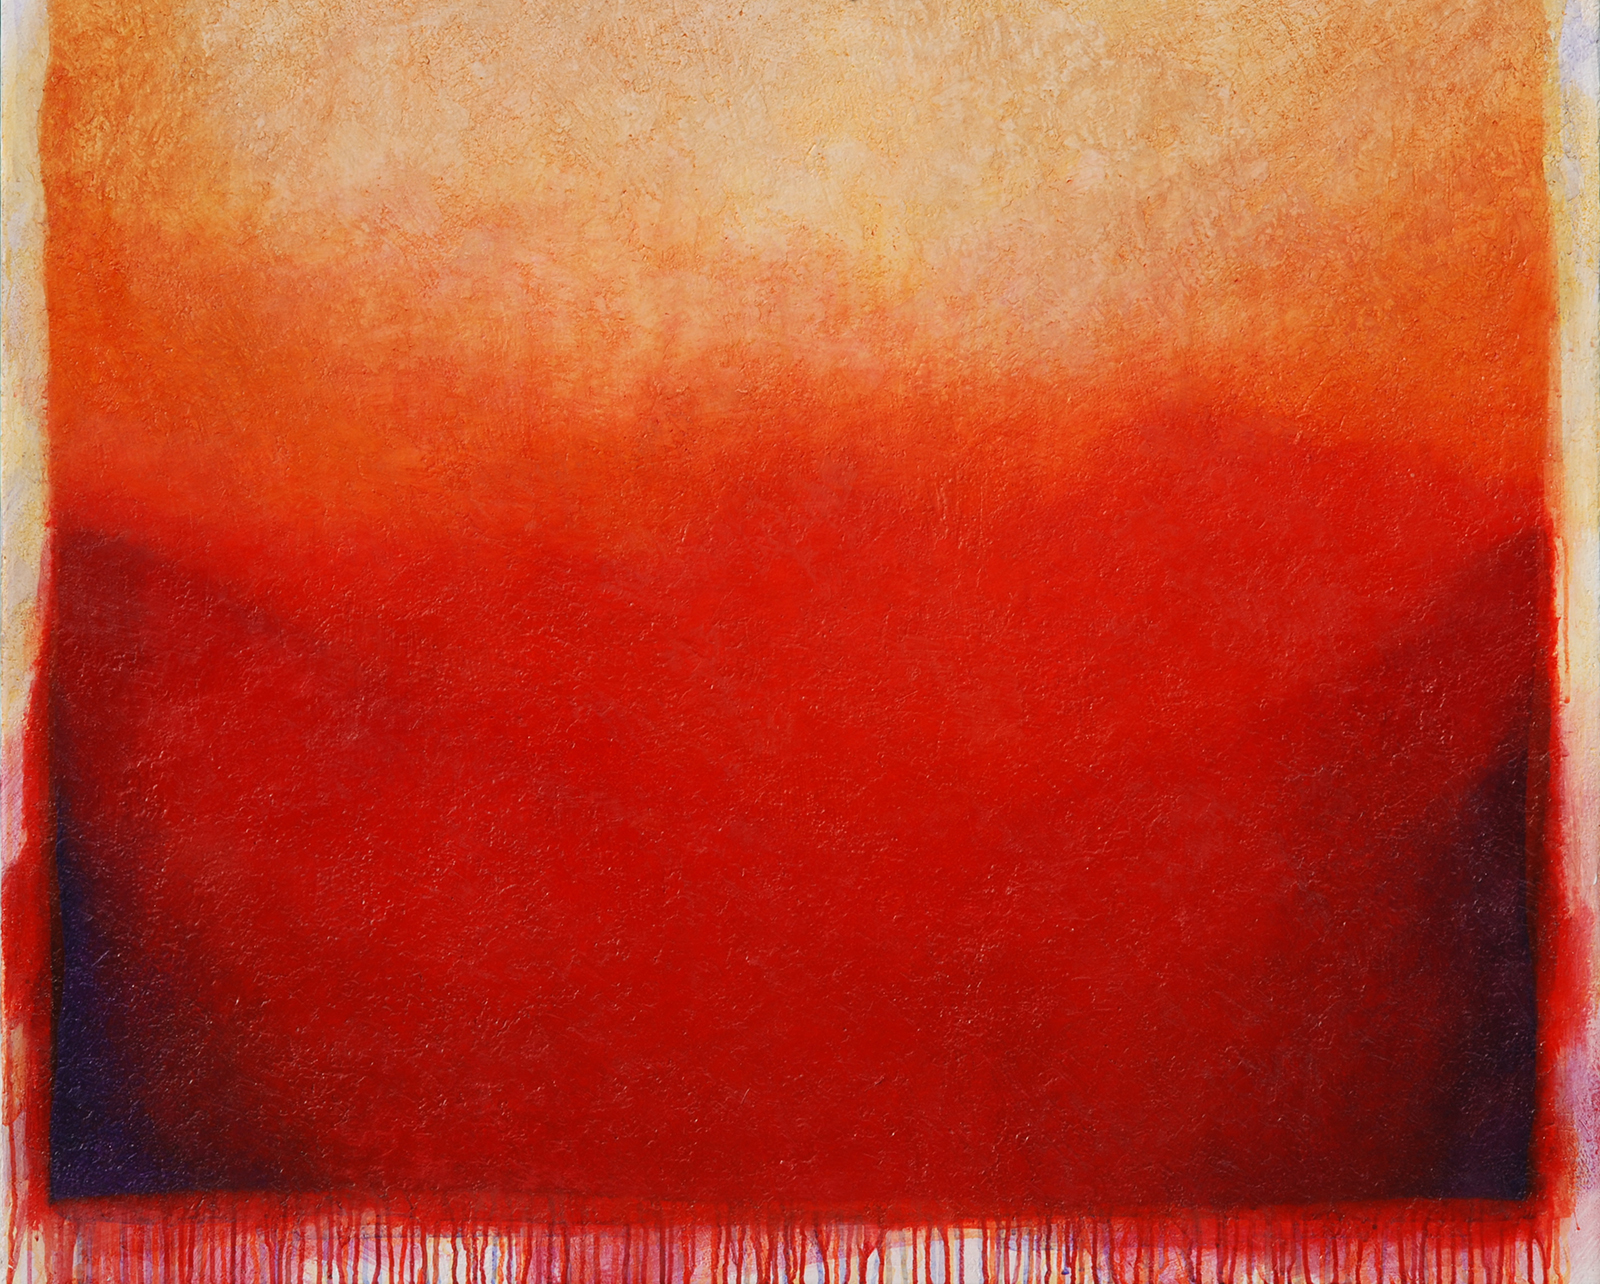 Rosso cadmio, 2009 acrilico e olio su tela 100 x 120 cm